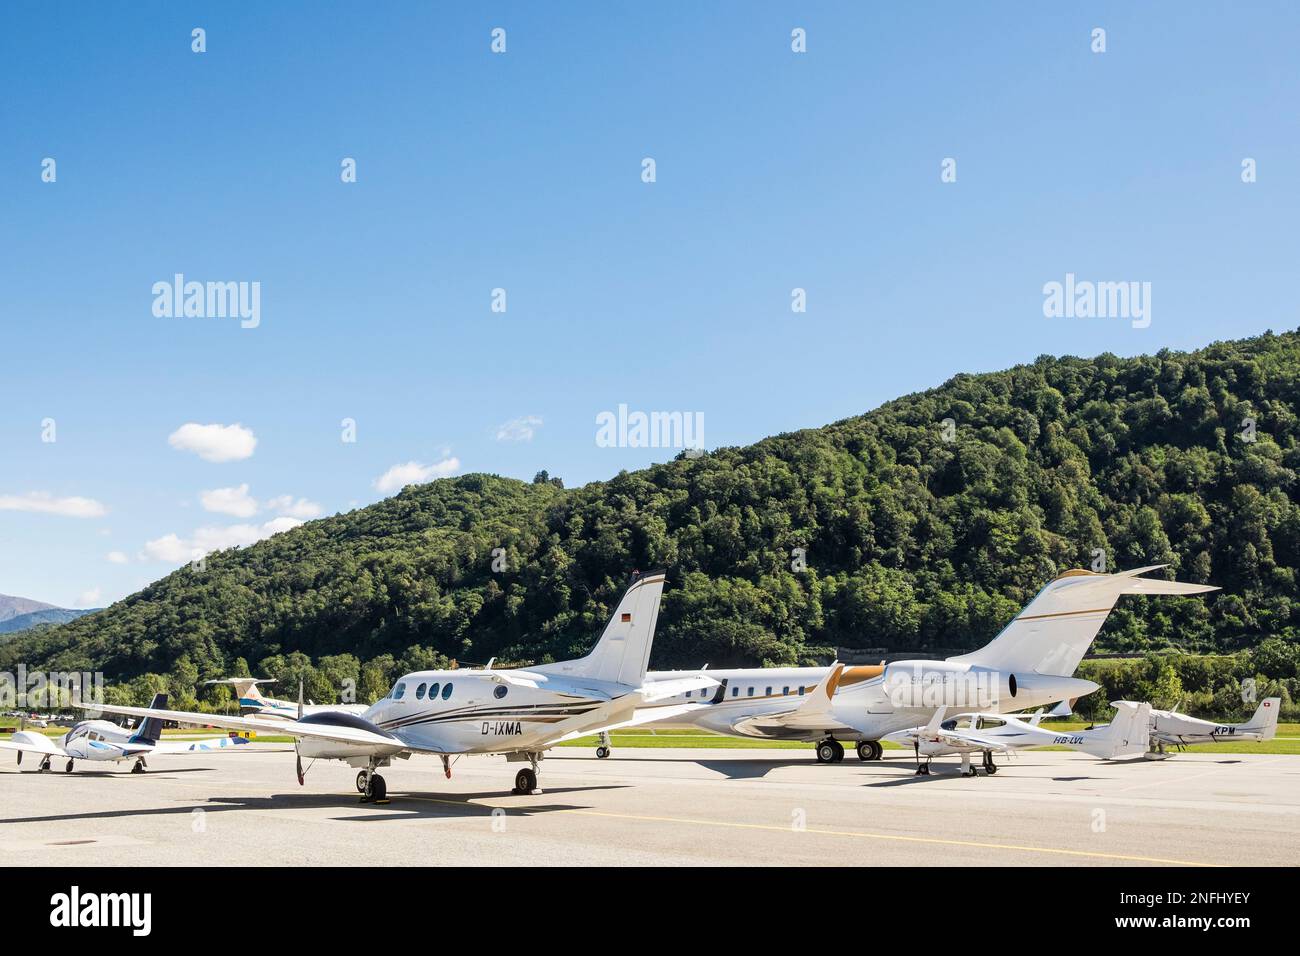 Switzerland, Canton Ticino, Lugano, Agno Airport Stock Photo